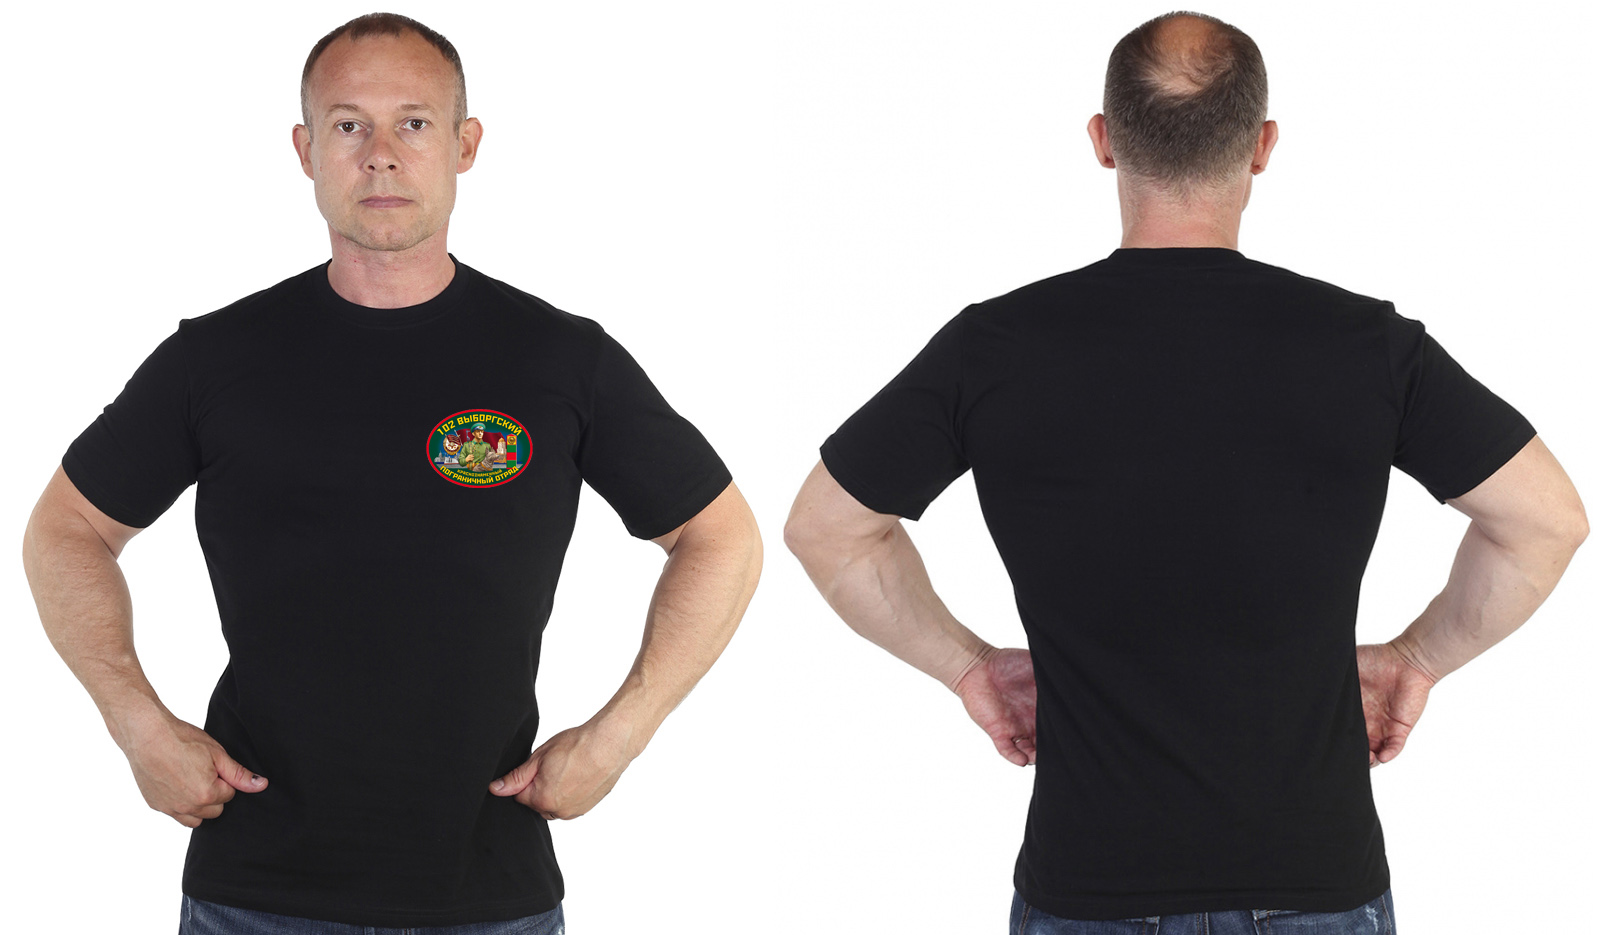 Чёрная футболка "102 Выборгский пограничный отряд" 